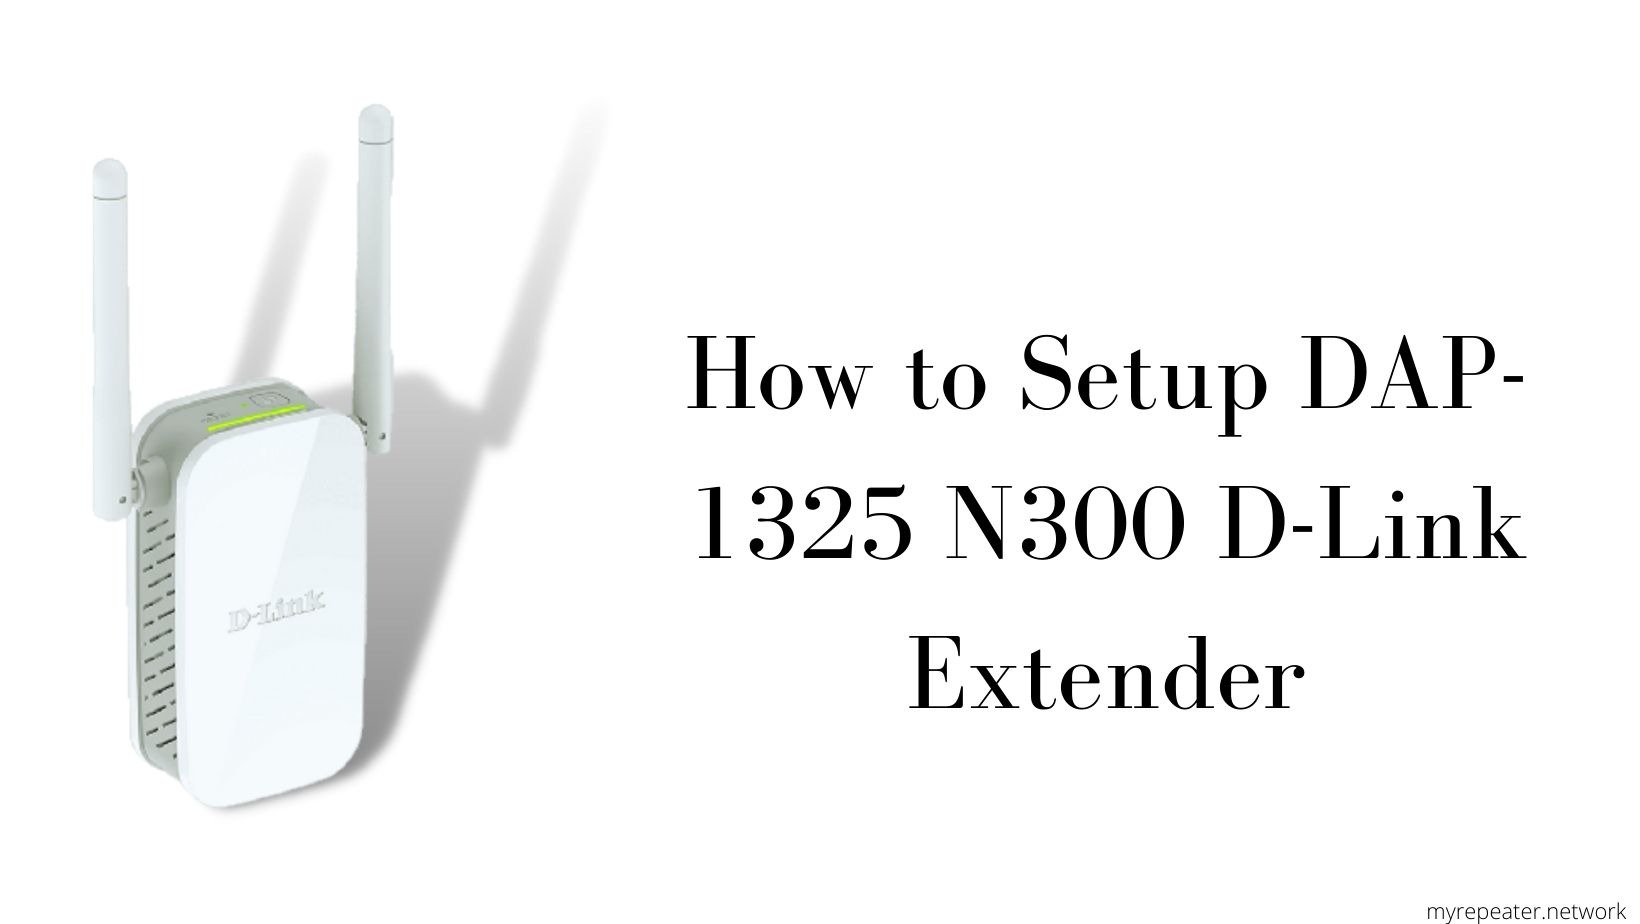 Setup DAP-1325 N300 D-Link Extender